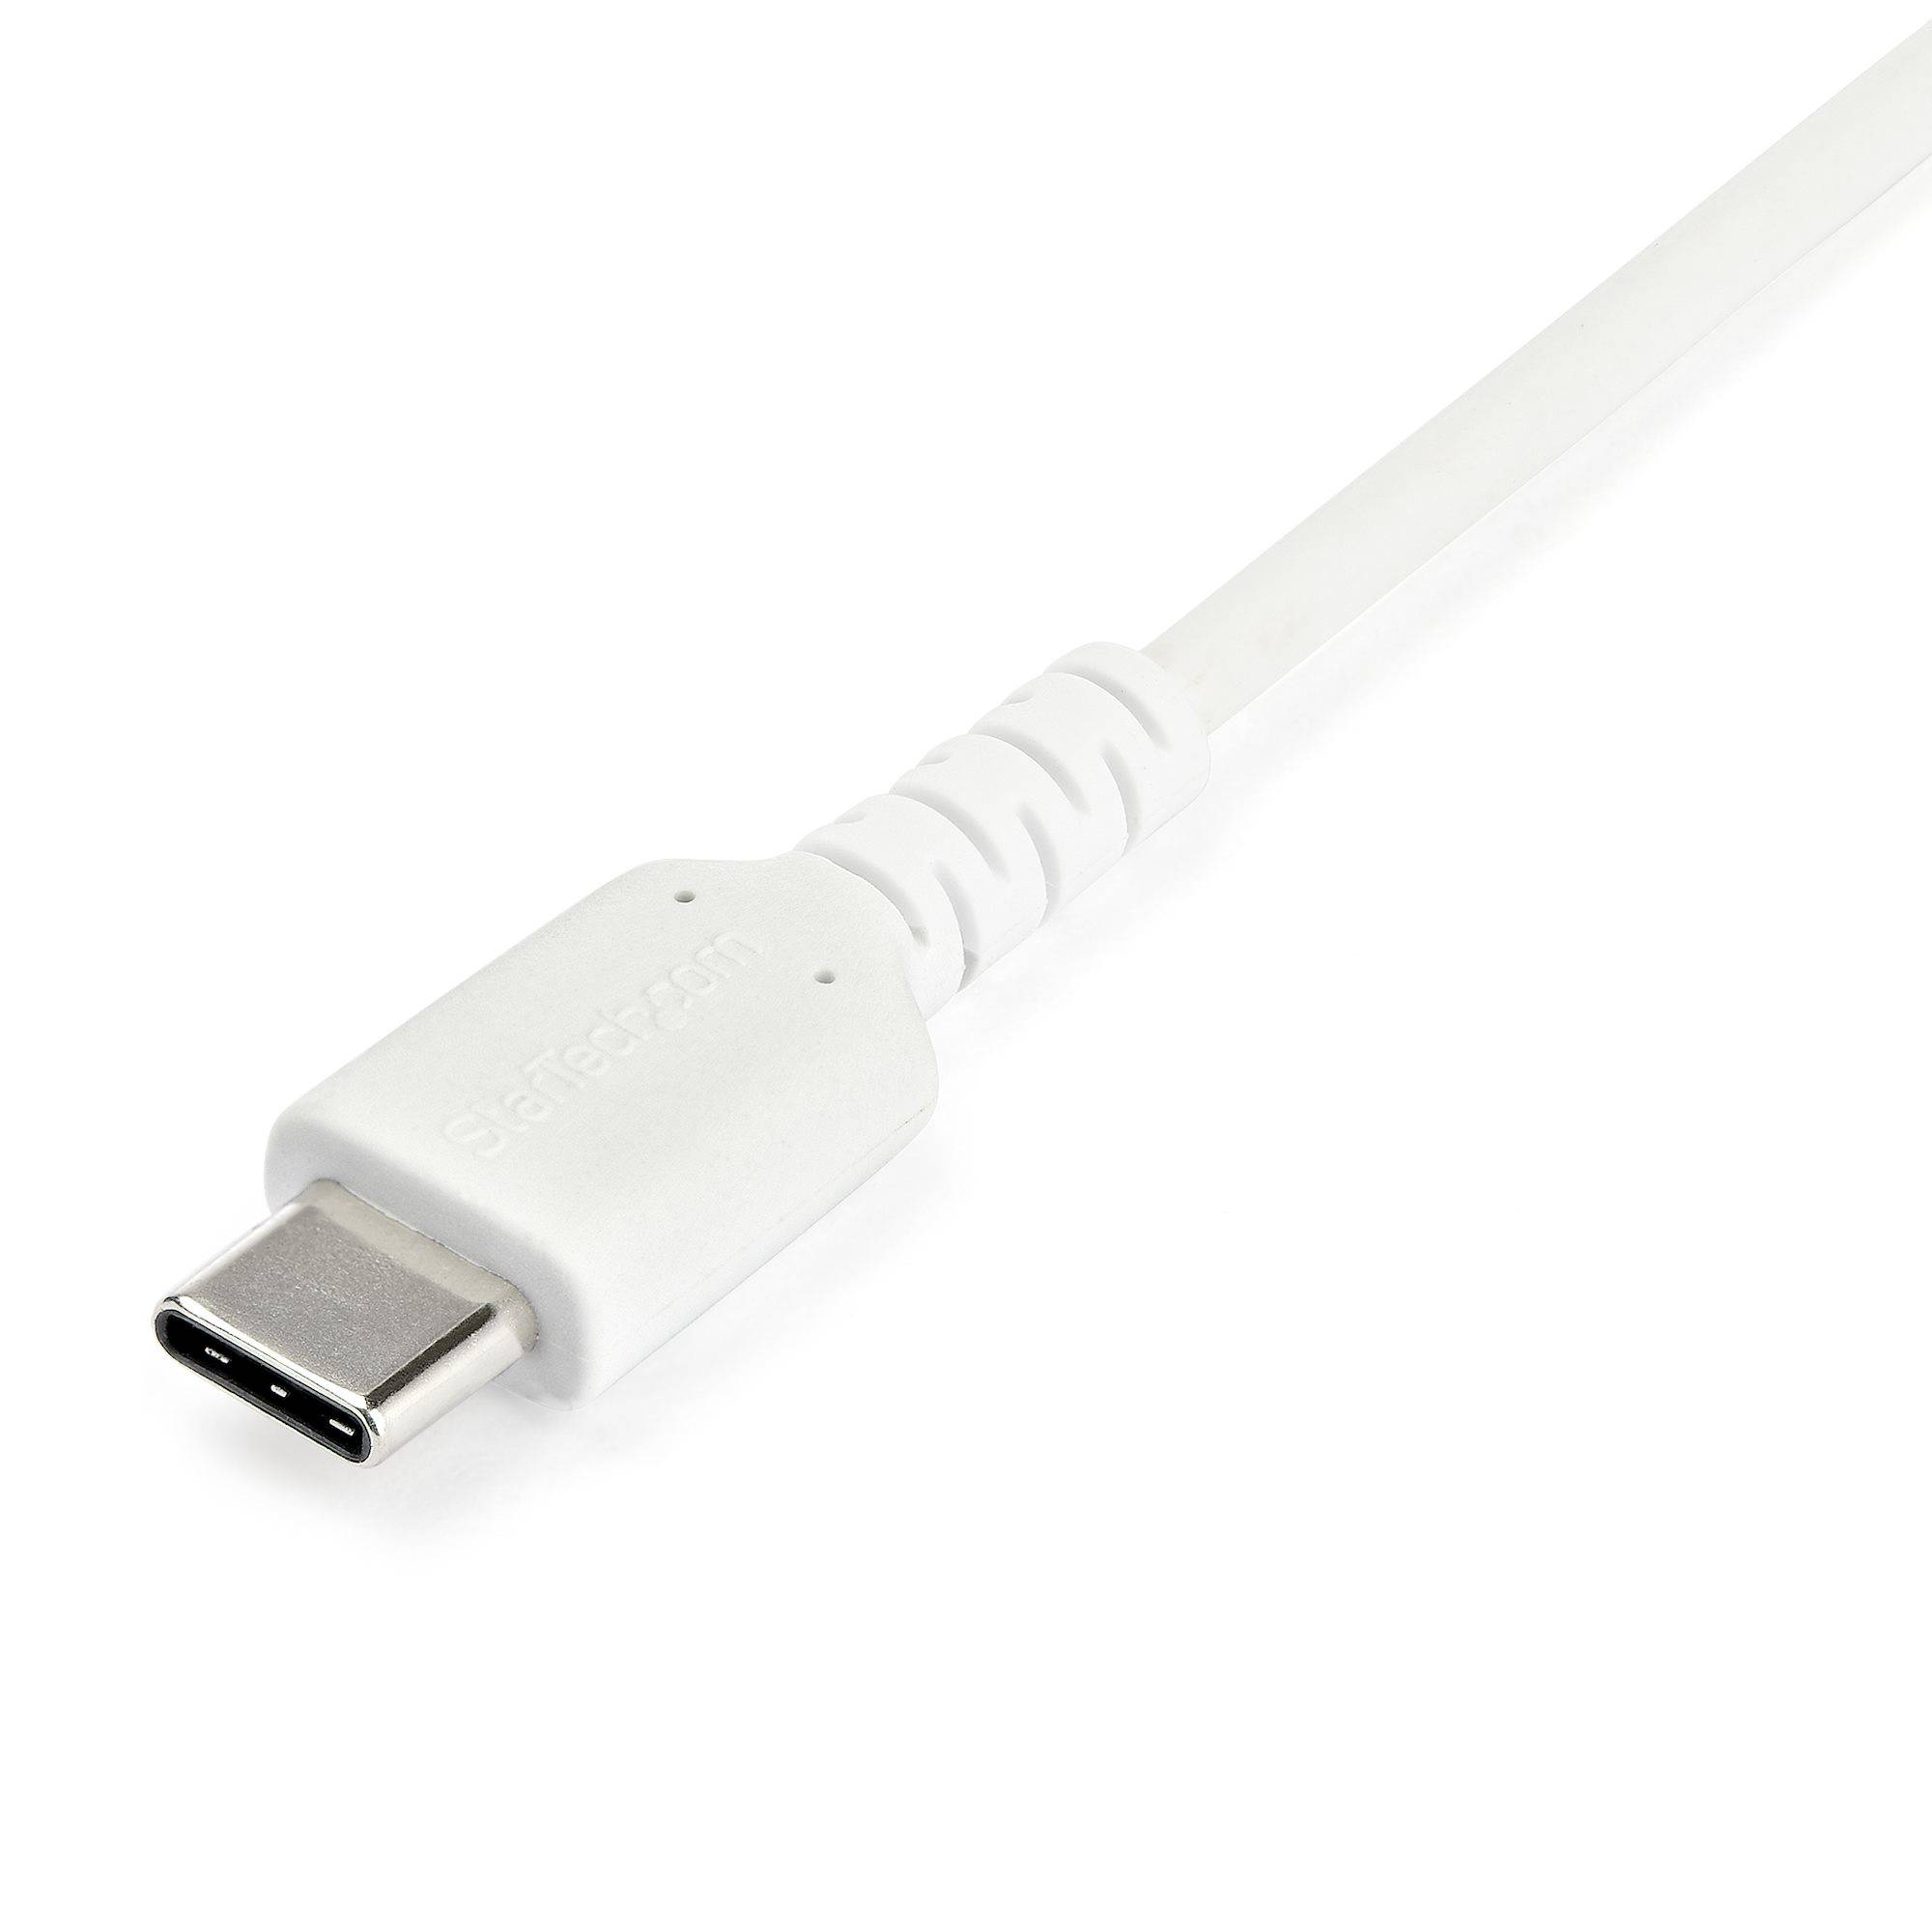 Rca Informatique - image du produit : 2M DURABLE USB 2.0 TO USB C CABLE WHITE ARAMID FIBER